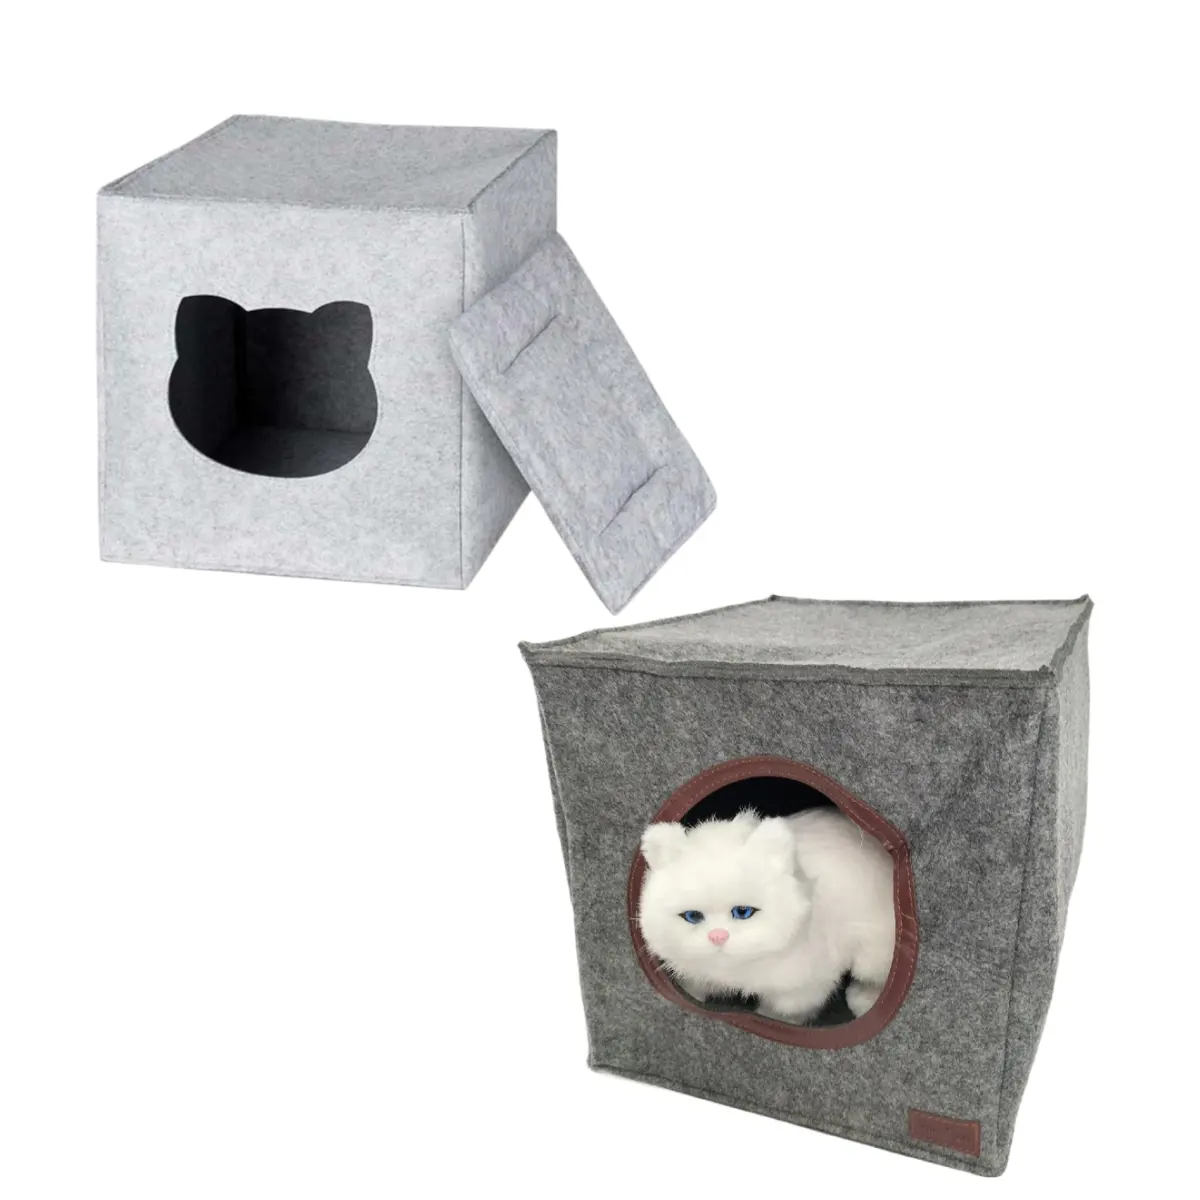 제조 맞춤형 접이식 빨 두꺼운 펠트 고양이 동굴 강화 탑 고양이 큐브 고양이 동굴 집